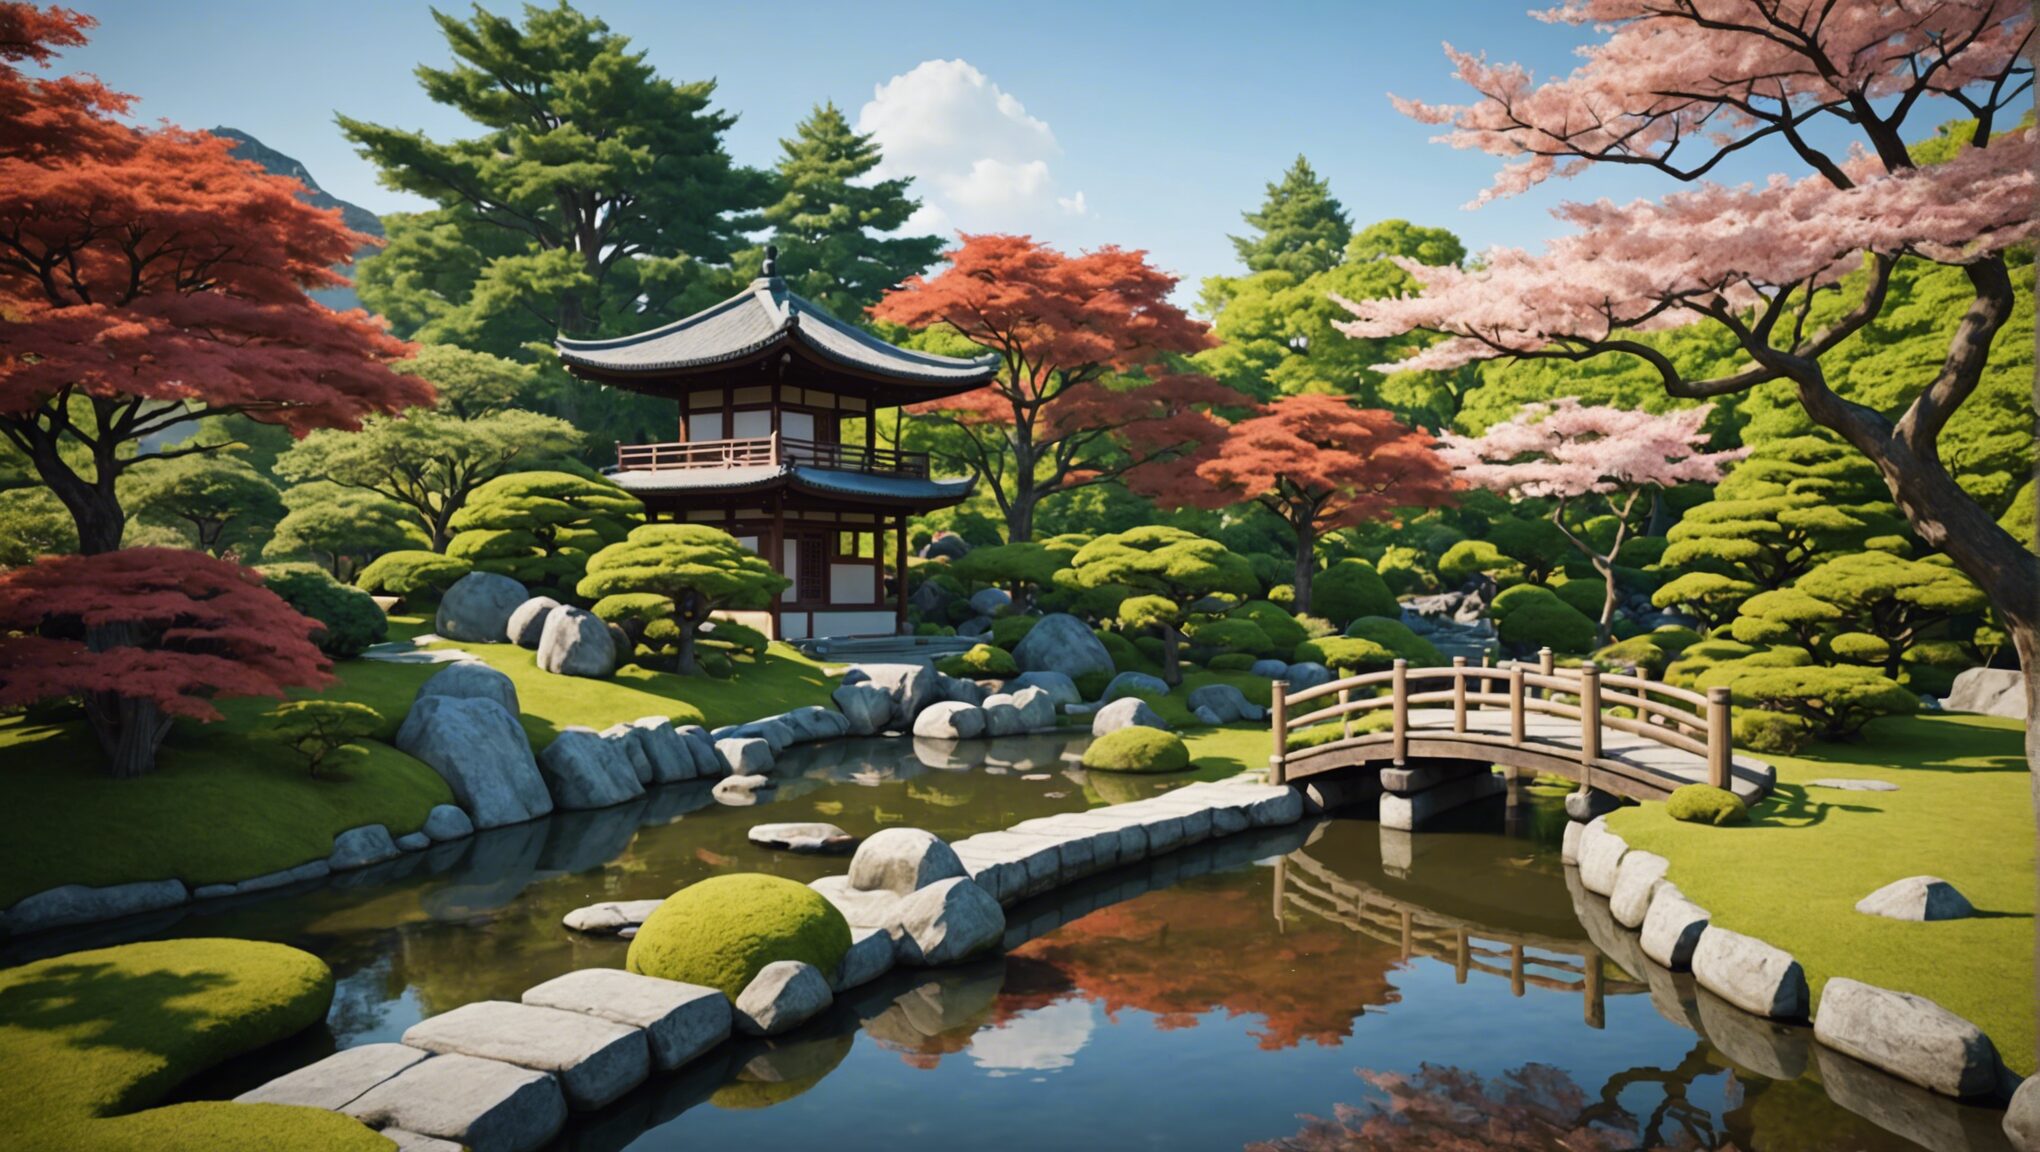 découvrez comment créer un jardin japonais apaisant en 10 étapes faciles et transformez votre espace extérieur en un havre de paix à la japonaise.